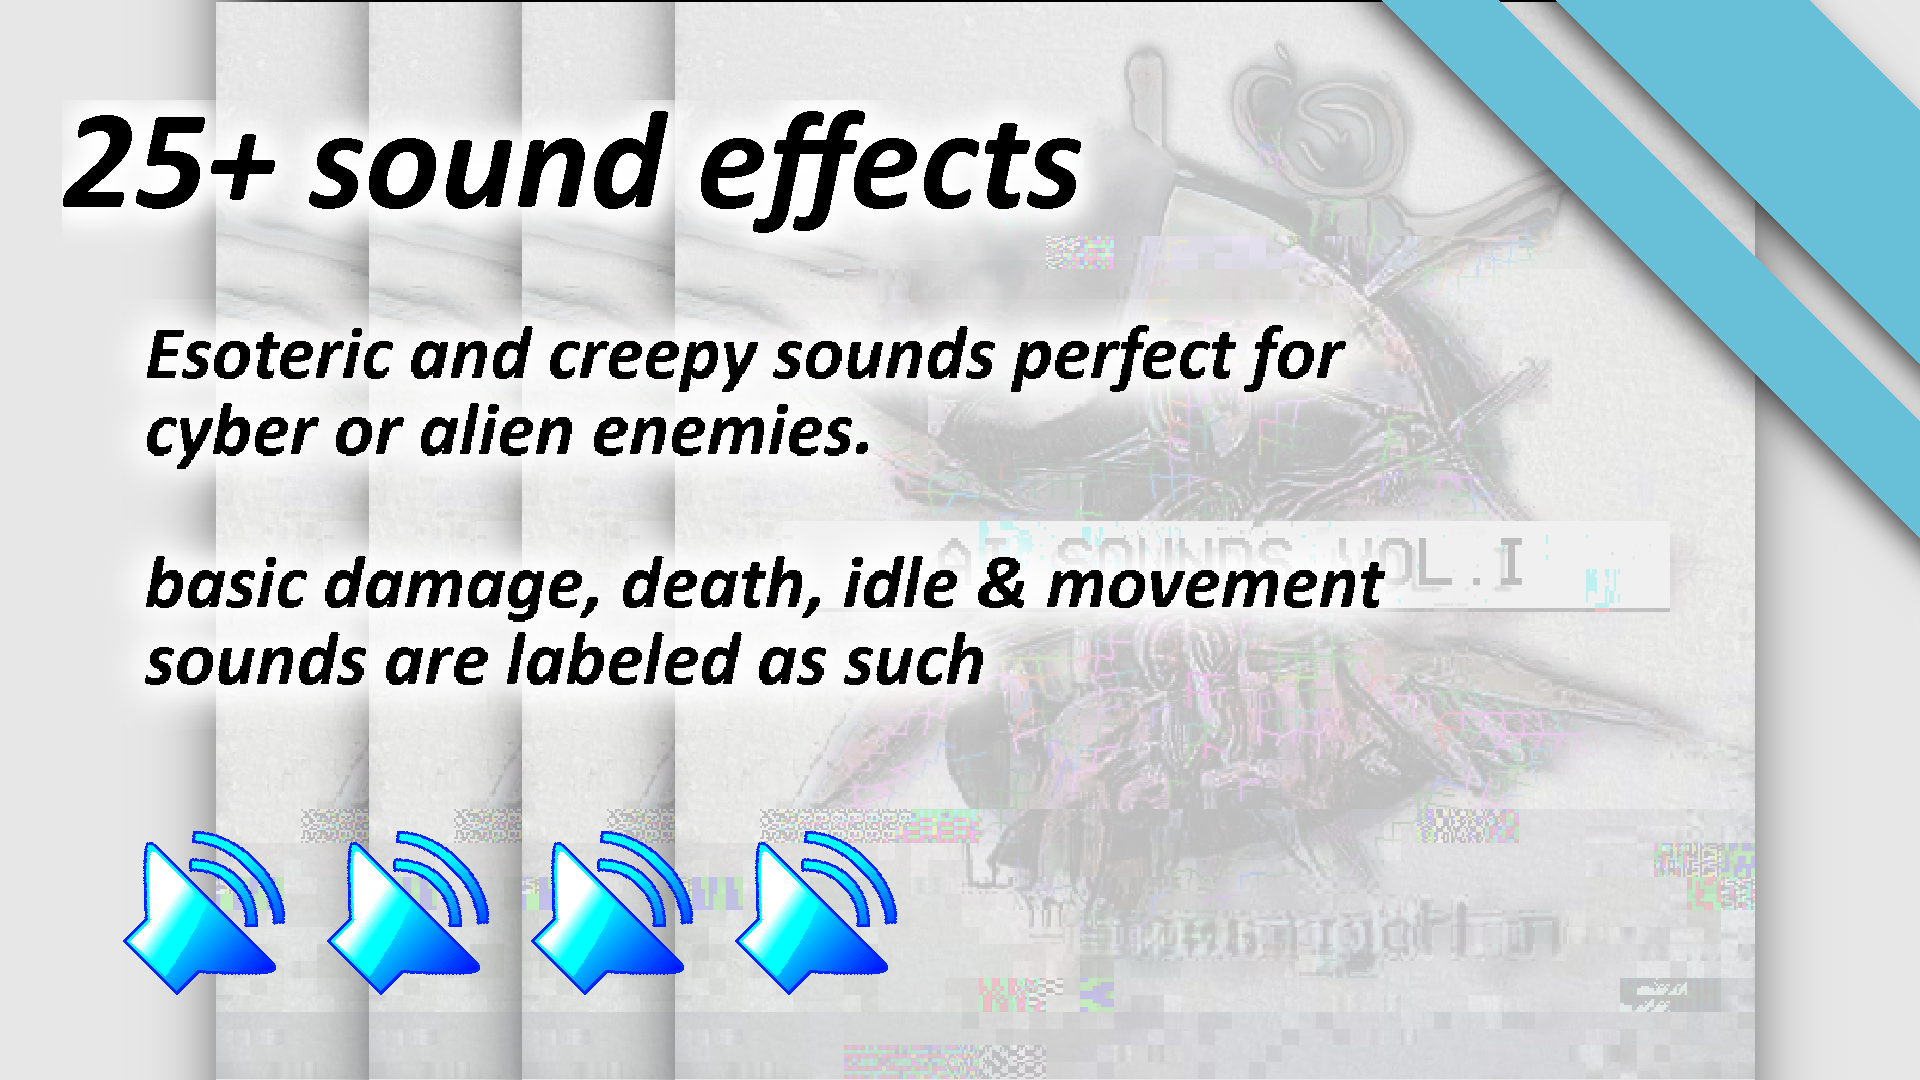 AI, CyberDemon, & Alien Sound Effects